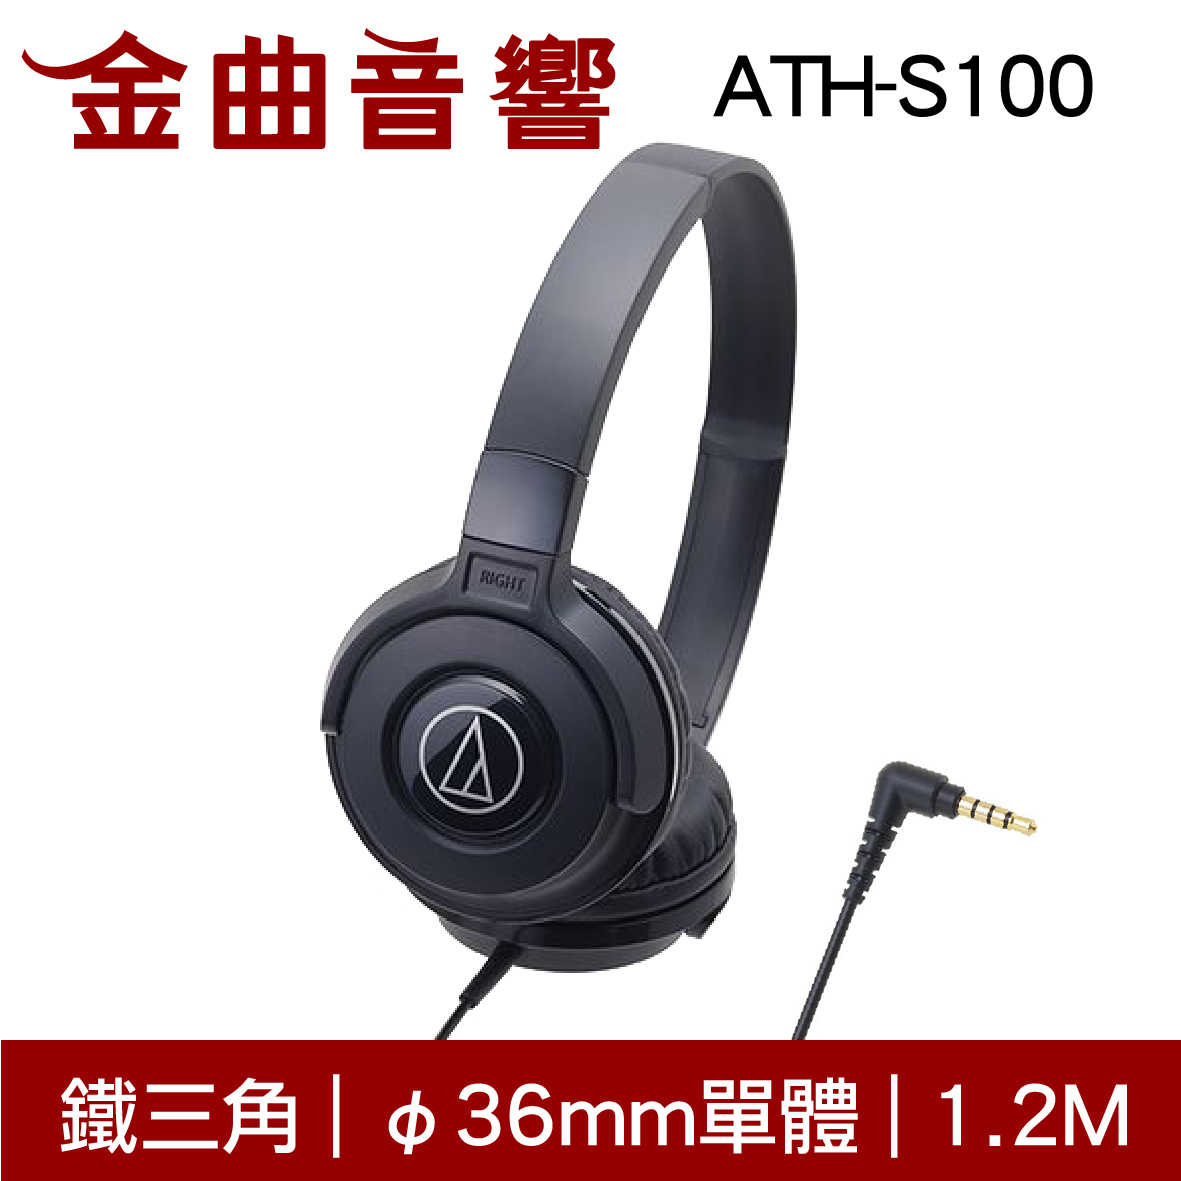 鐵三角 ATH-S100 黑色 兒童耳機 大人 皆適用 耳罩式耳機 無麥克風版 | 金曲音響